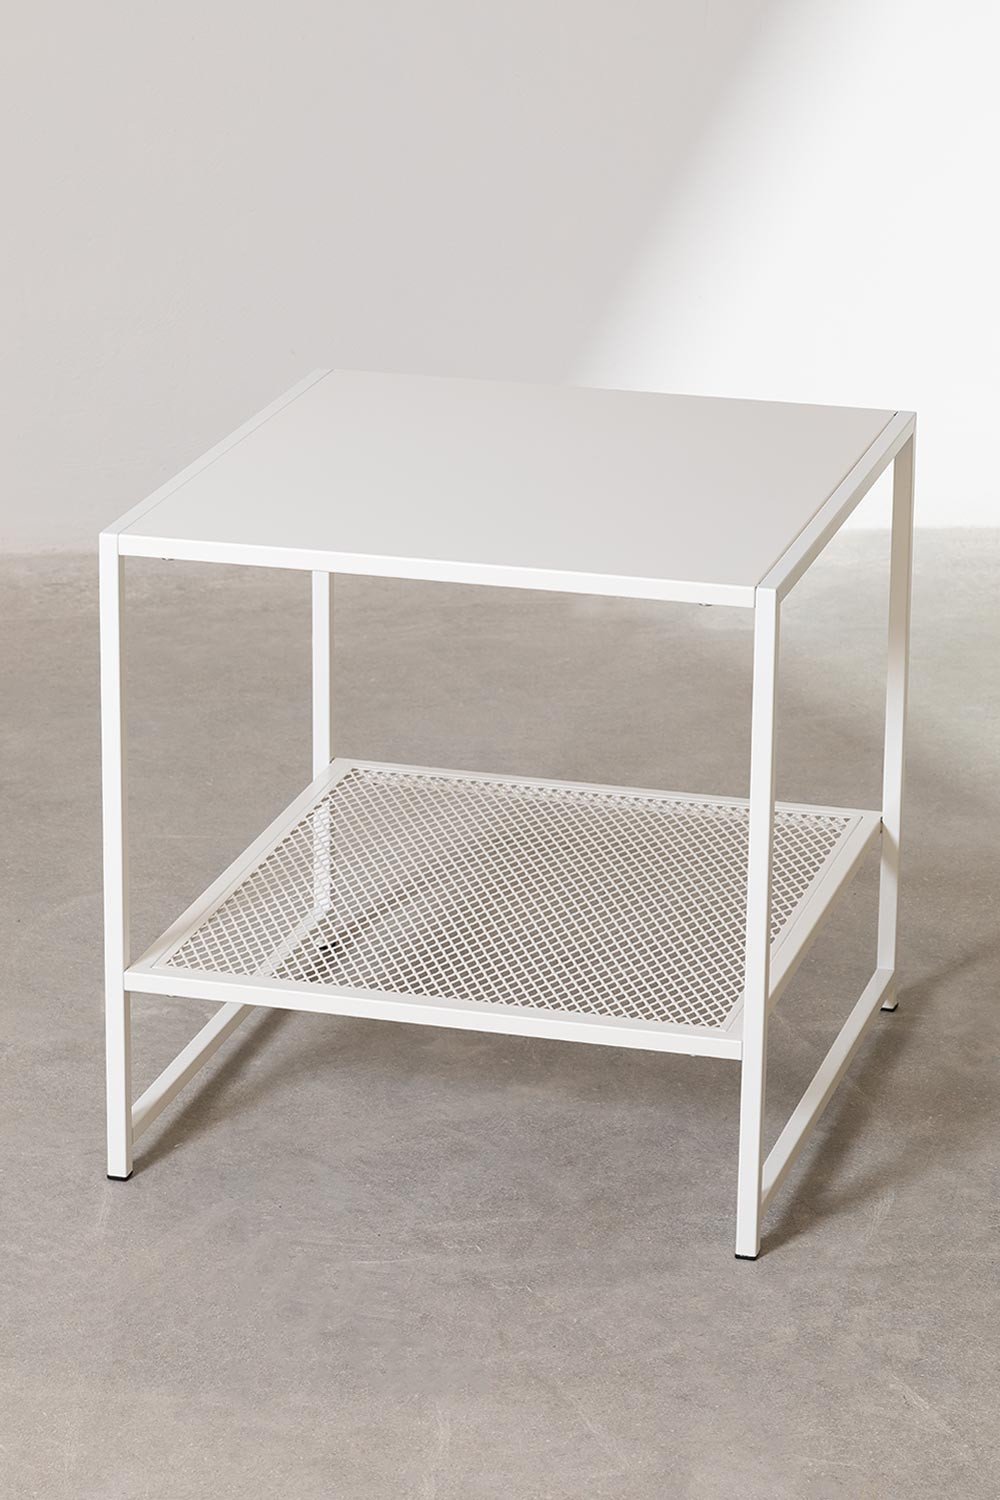 Table d'appoint carrée en acier avec grille (50,8x50,8 cm) Thura, image de la galerie 1